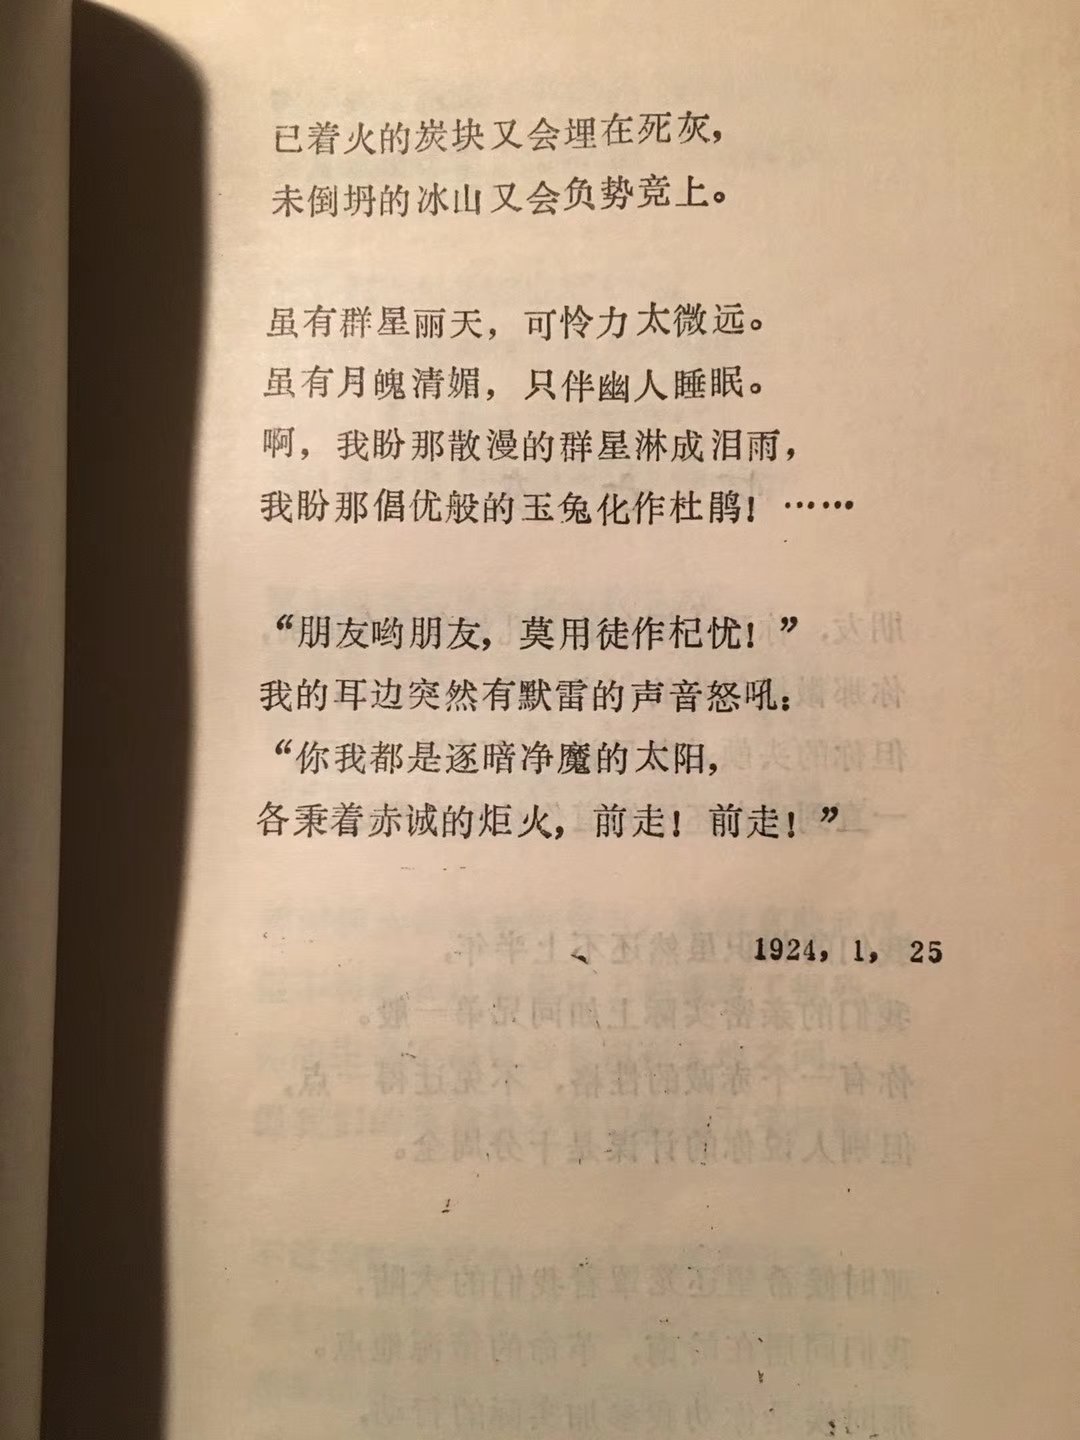 一，从楚辞开始，中国文学史上才有了有名有姓的作者，有了第一位诗人、文学家，就是屈原，《诗经》虽然也有有名有姓的作者，但个人色彩不突出，作者生平也知道的不多。从屈原开始，才有了这种“我手写我诗”，直抒胸臆的文学表达， 用一个现在很流行的学术概念说，就是中国“抒情传统”的开端。